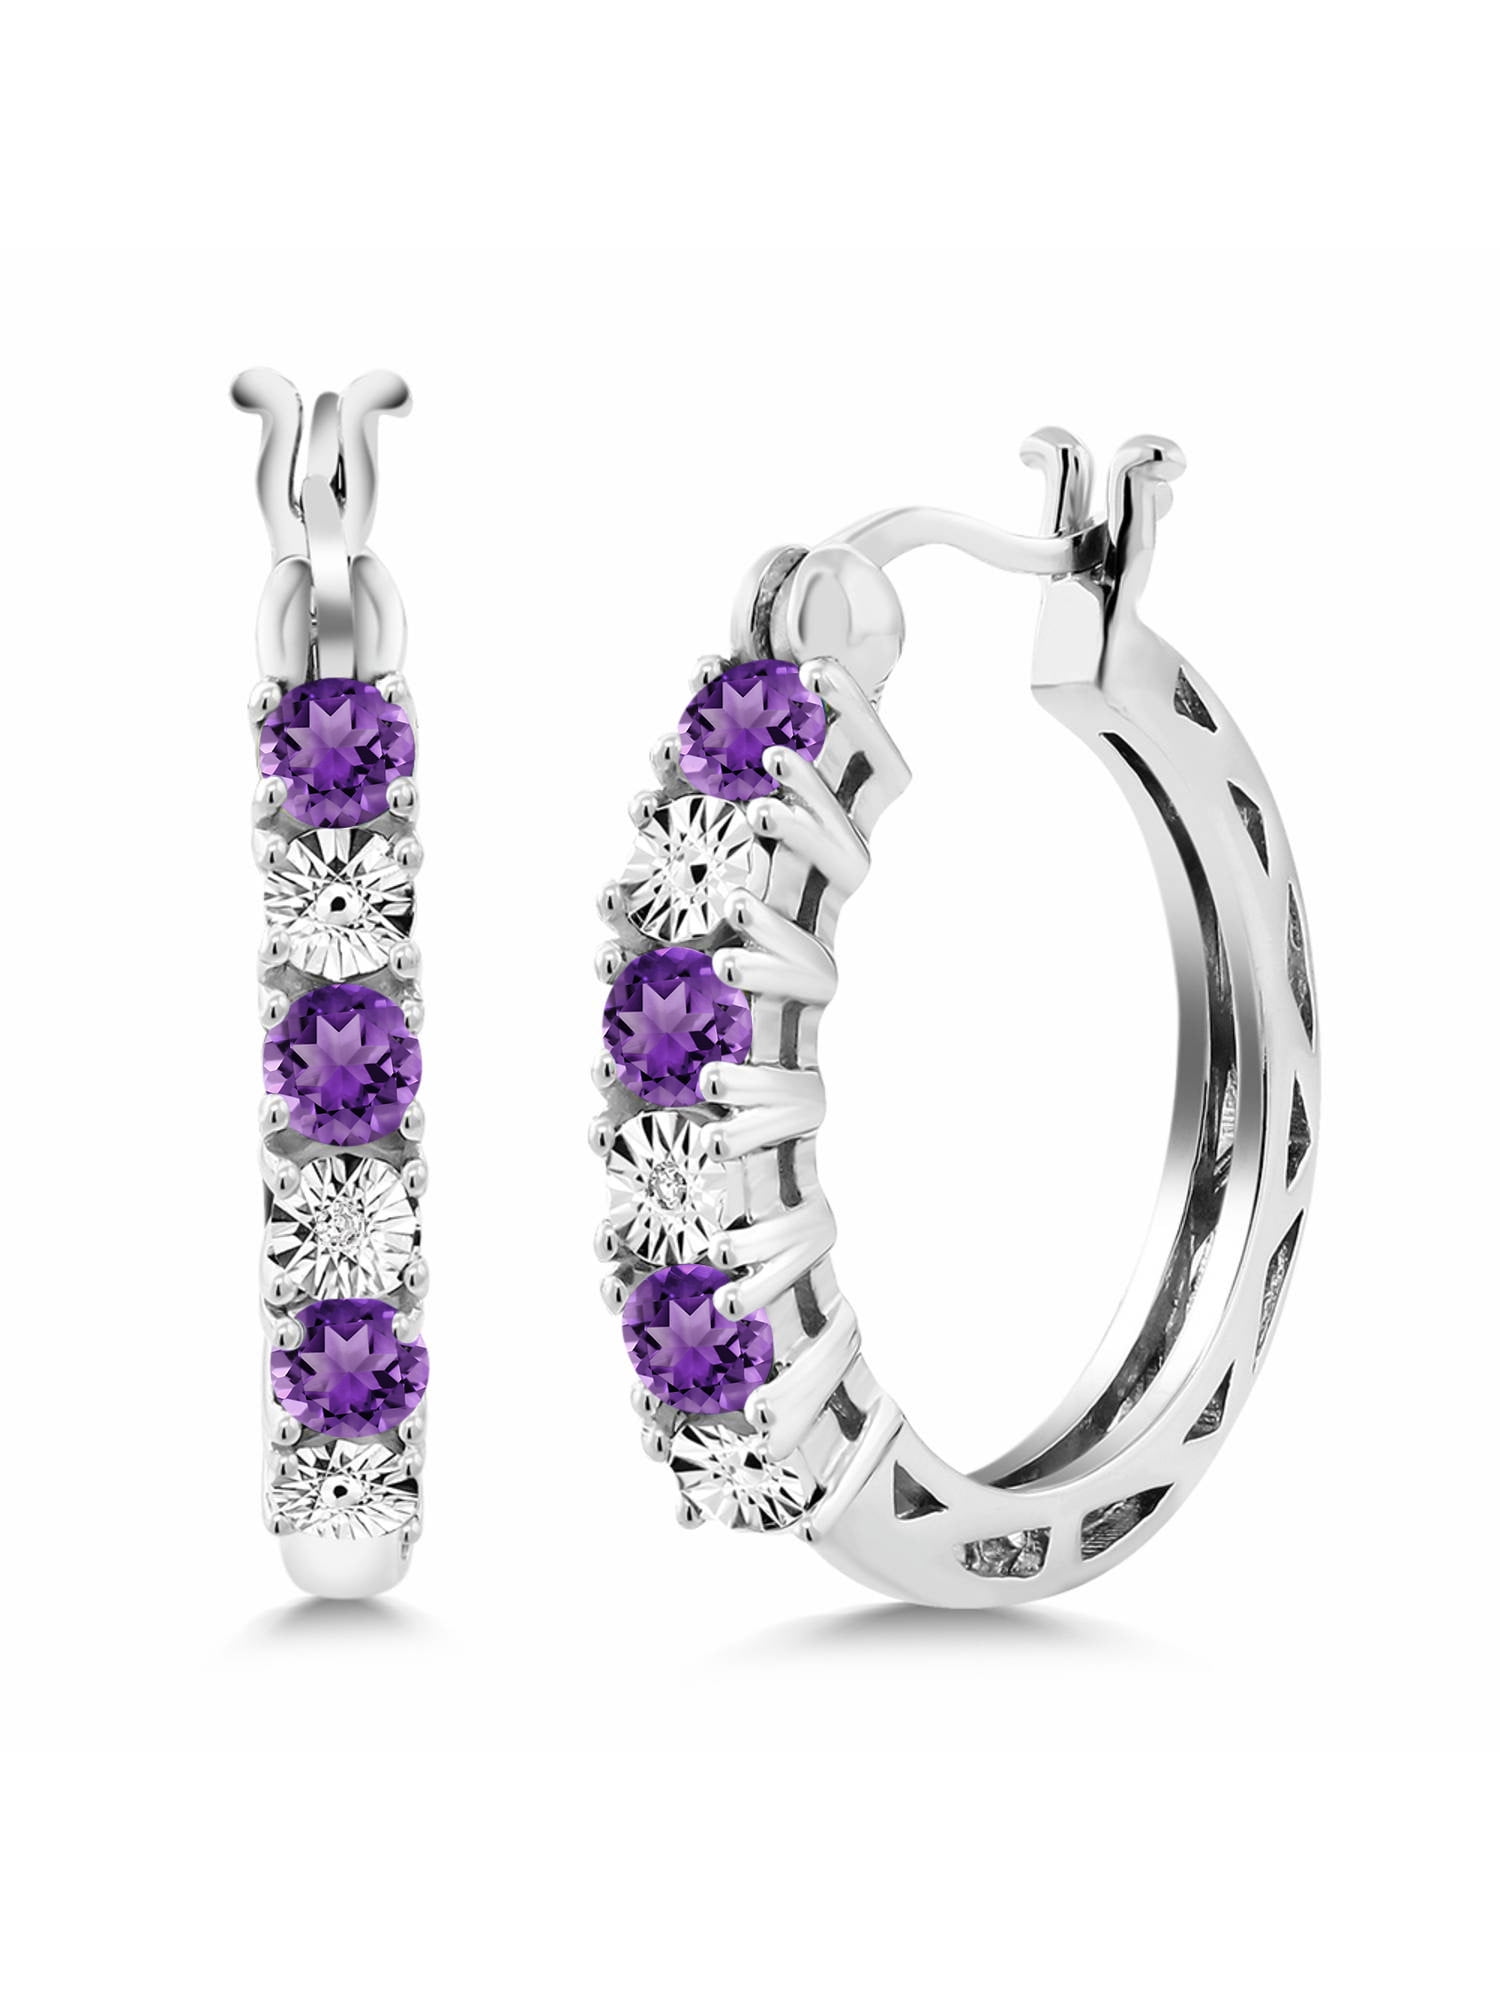 LARGE 3 inch Purple hoop earrings Classic Hoop Earrings Purple Earrings